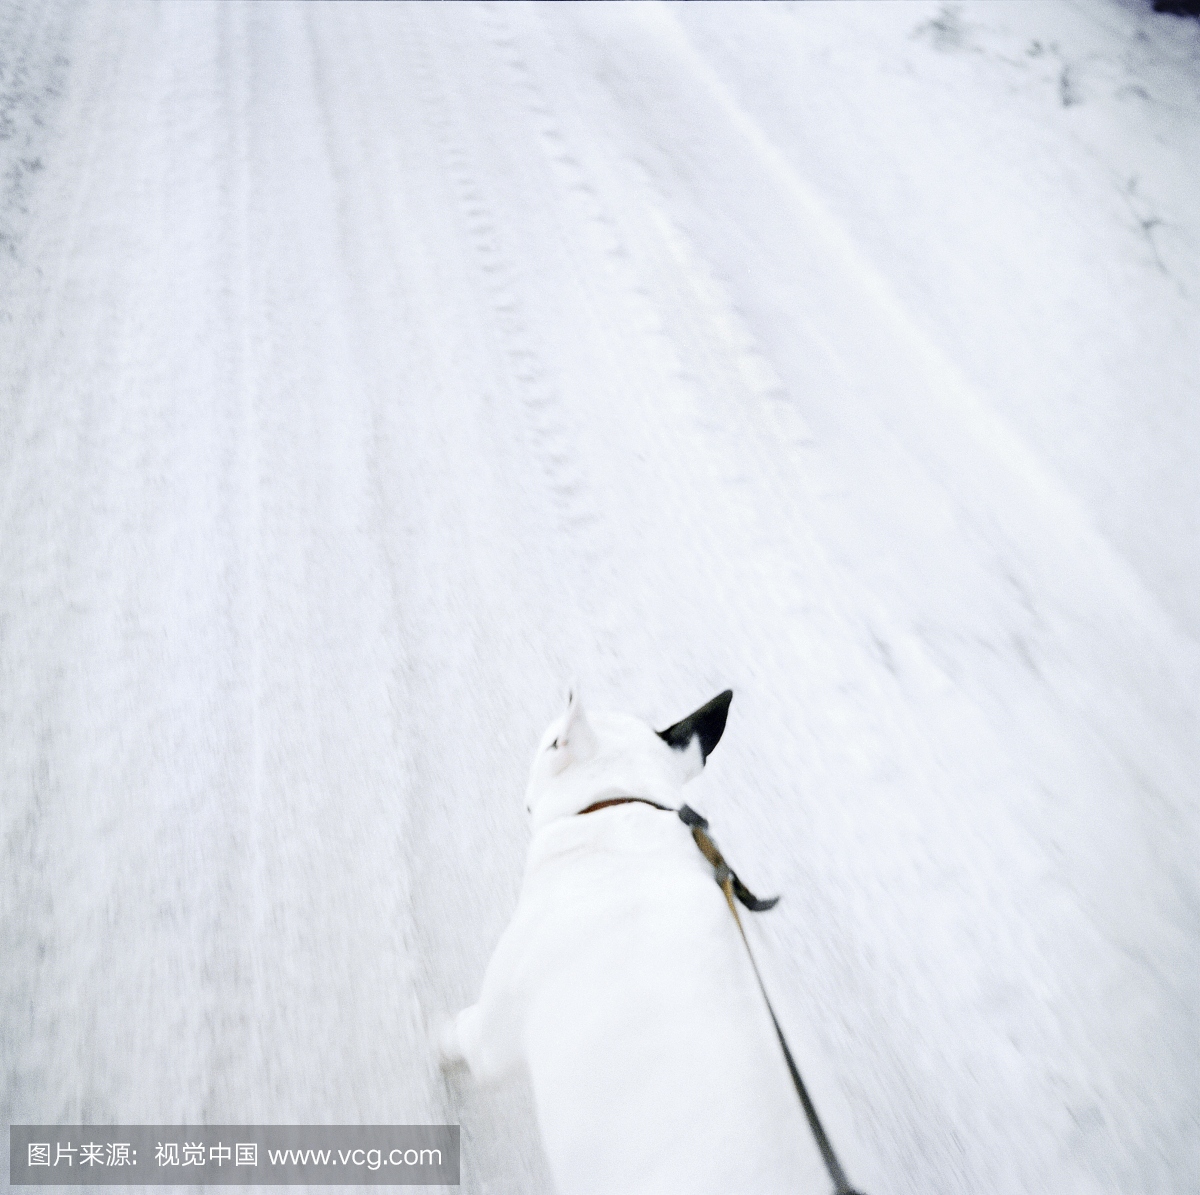 公牛梗在雪路上运行,在达拉纳,瑞典